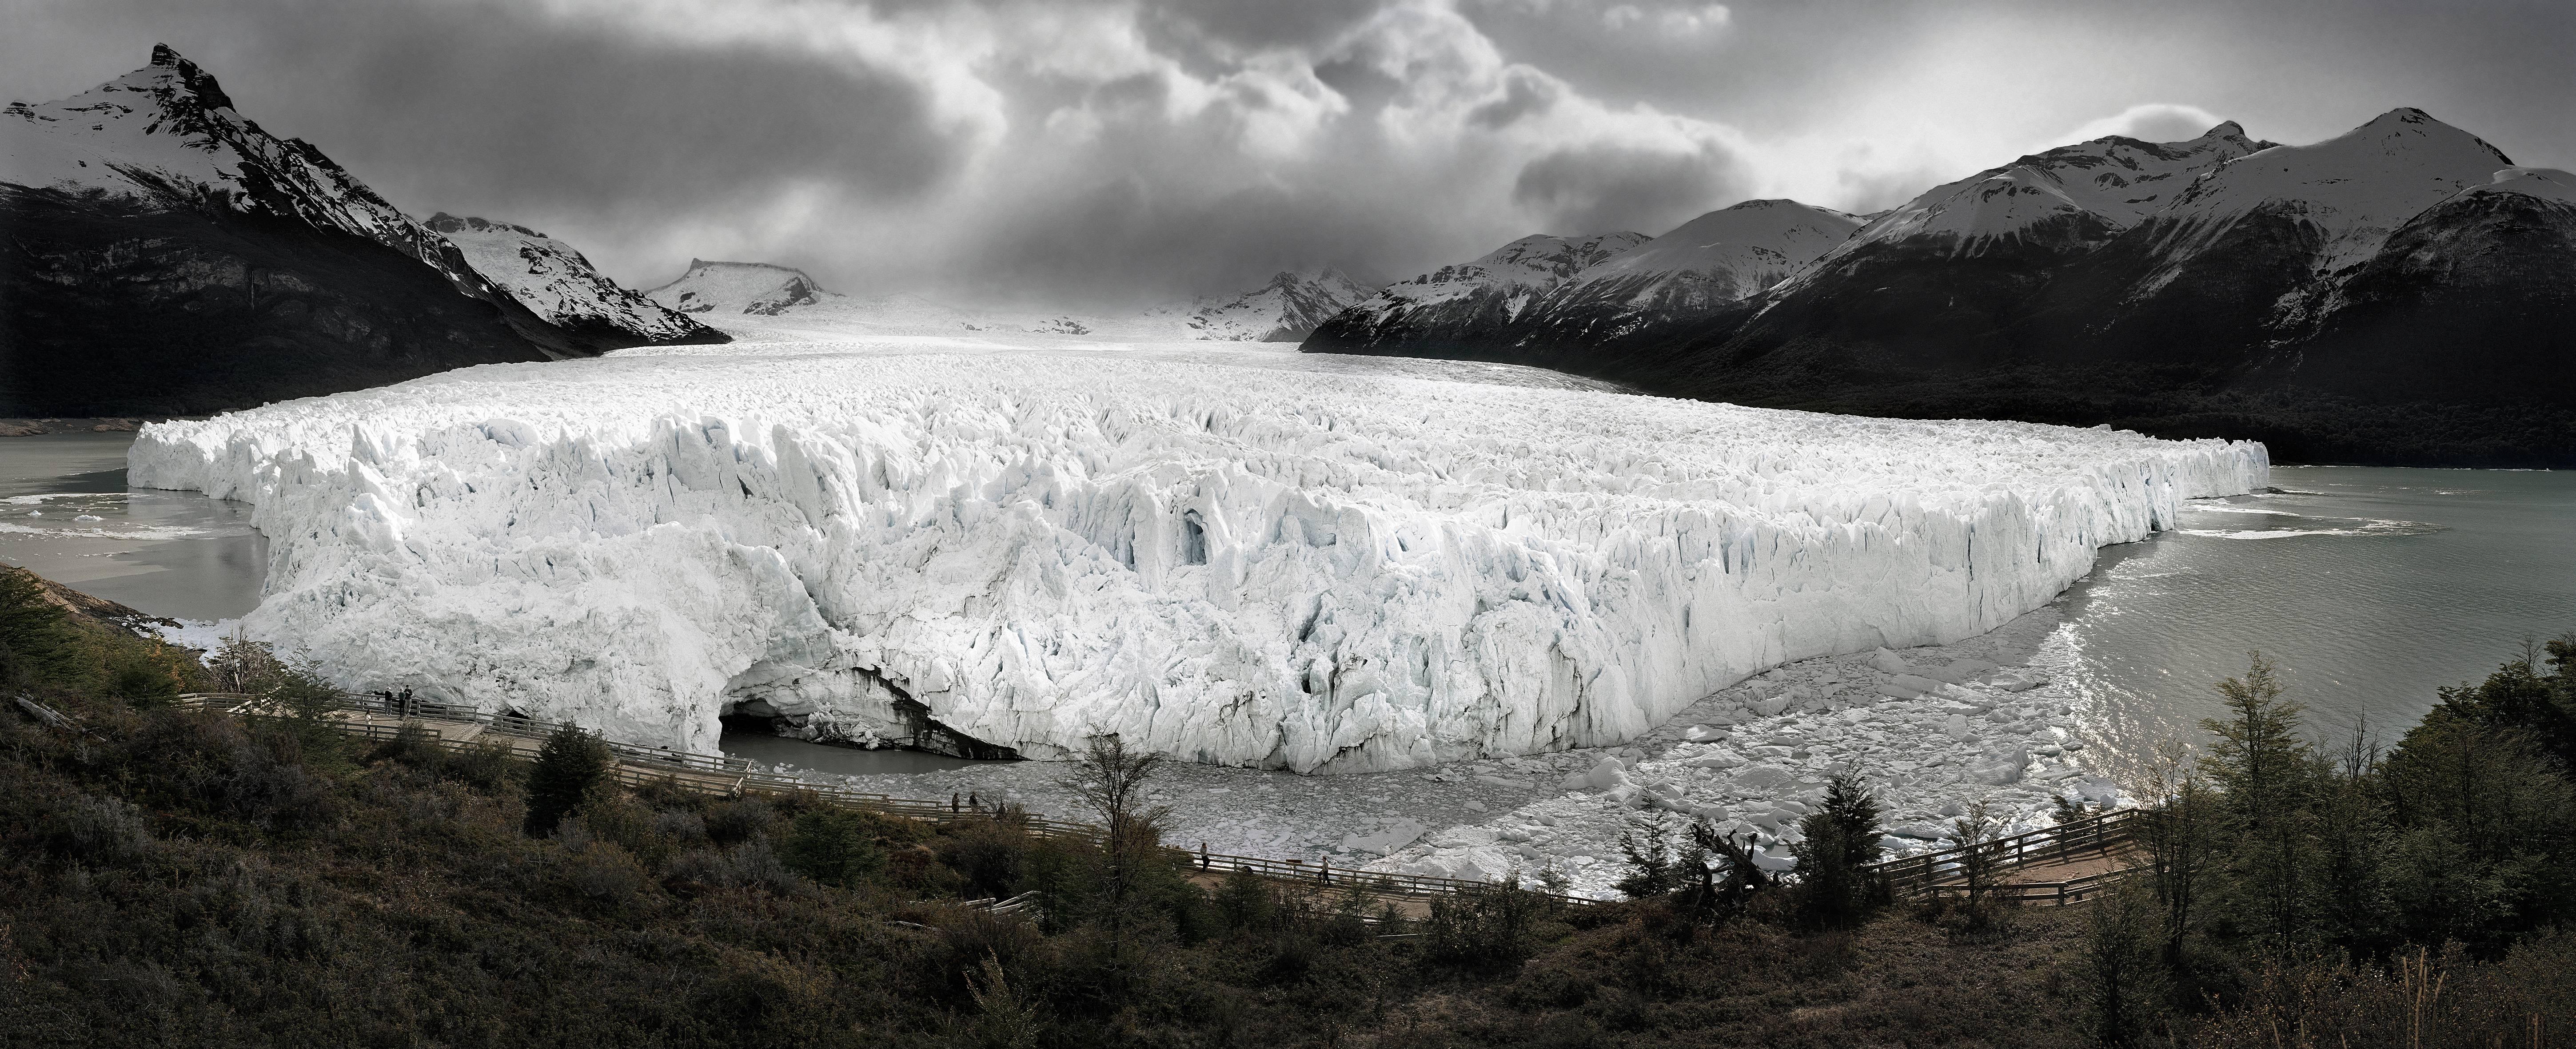 Luca Campigotto Landscape Photograph - Perito Moreno Glacier, Argentina